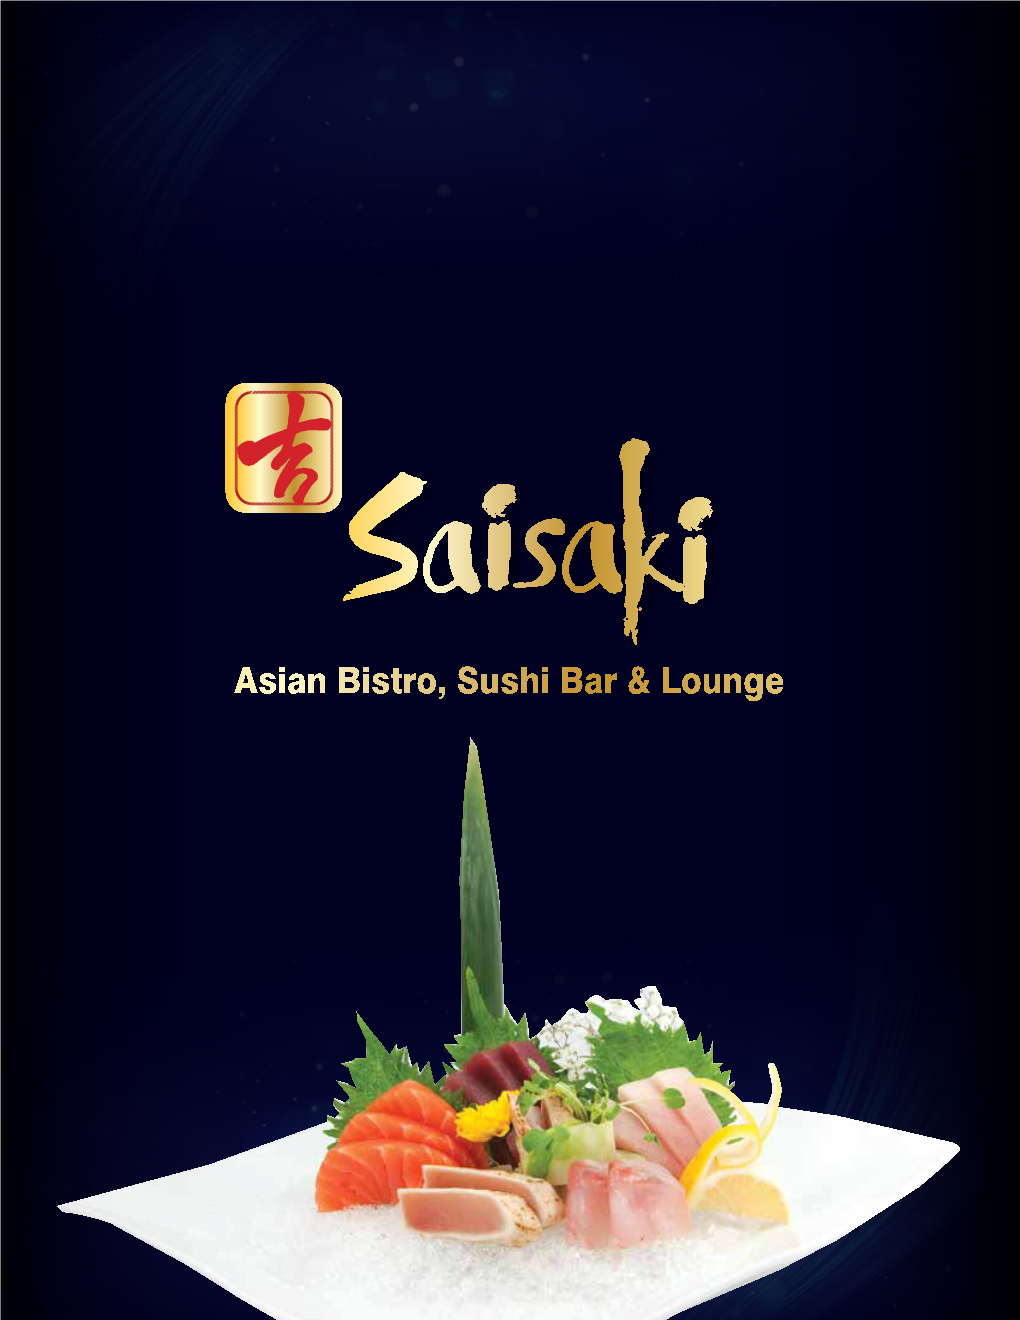 Asian Bistro, Sushi Bar & Lounge